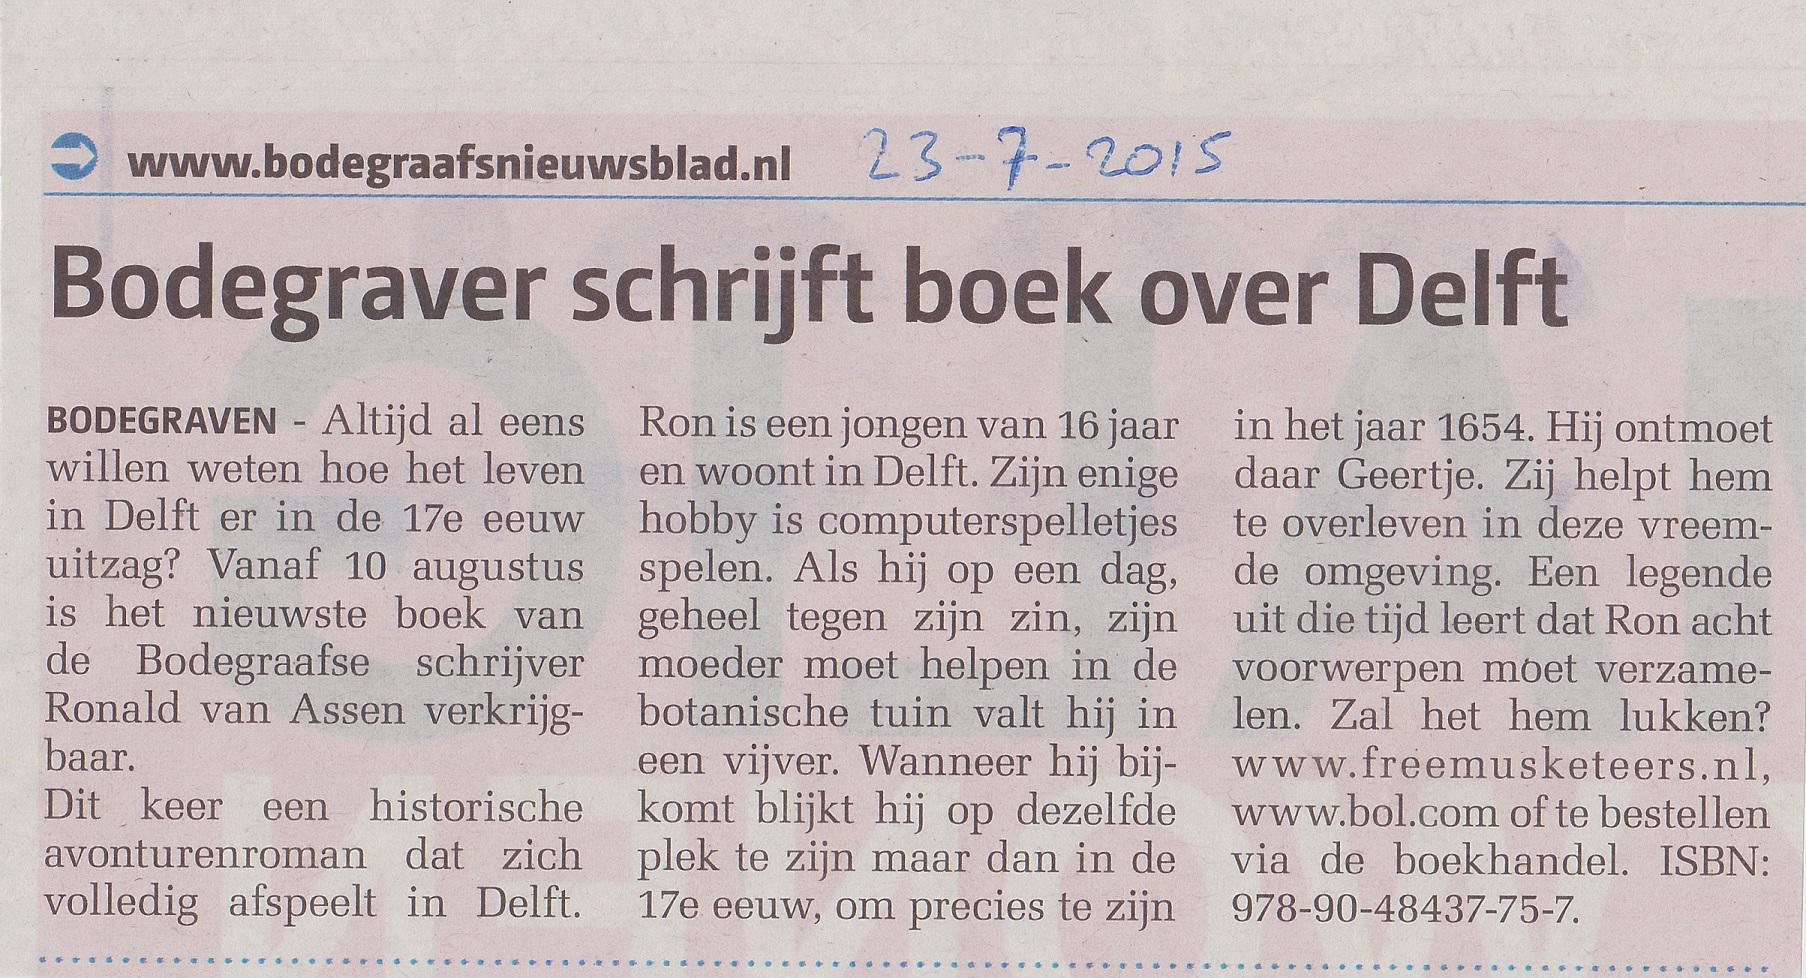 Bodegraafs Nieuwsblad 23-07-2015